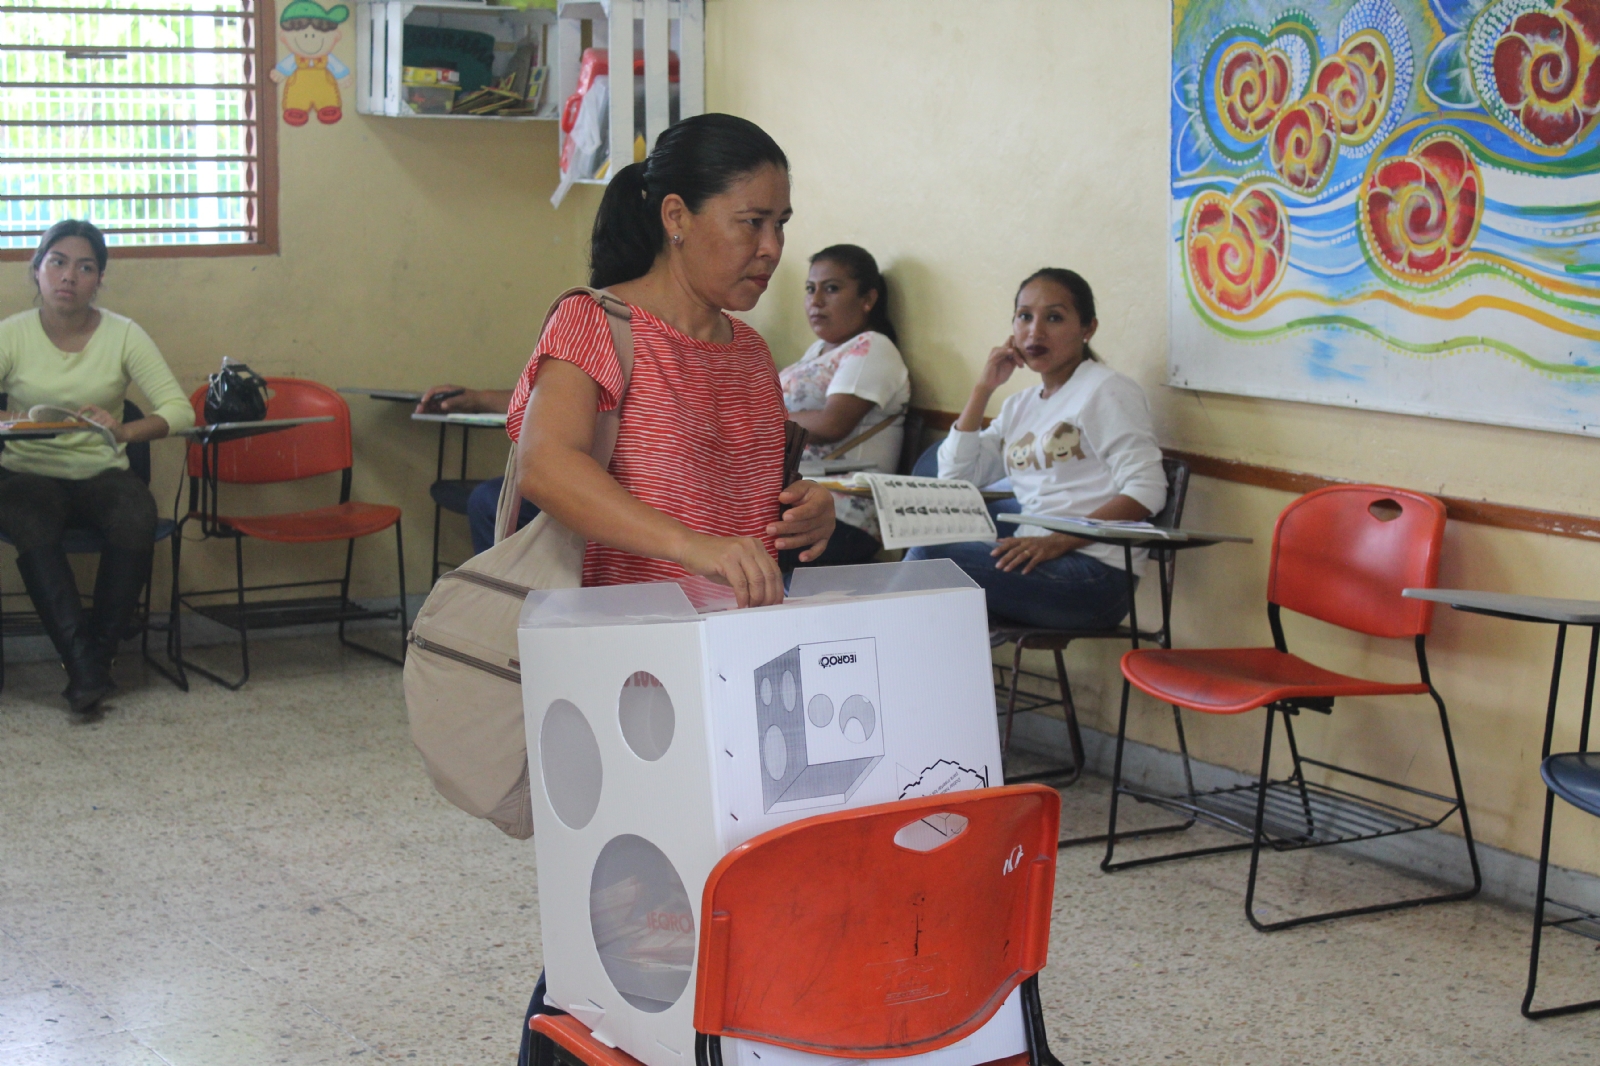 La consulta para poner en consideración la permanencia de Aguakan será en 4 municipios del Norte de Quintana Roo